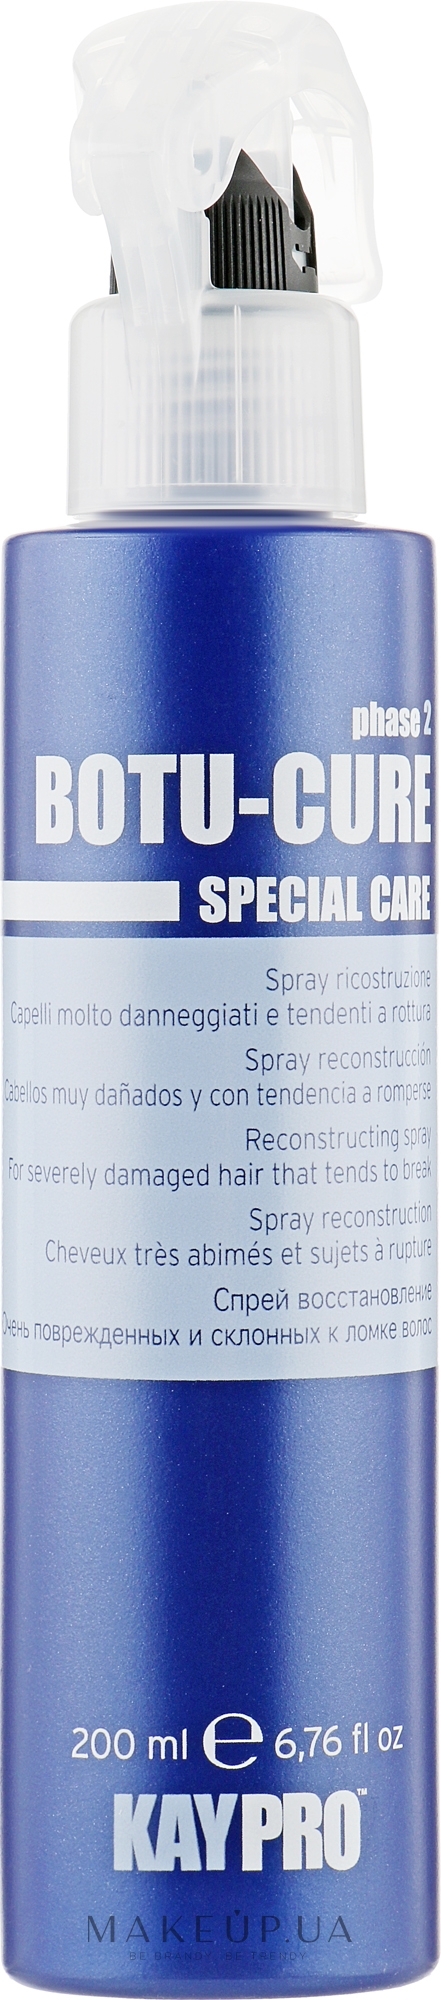 Спрей для реконструкції волосся - KayPro Special Care Boto-Cure Spray — фото 200ml